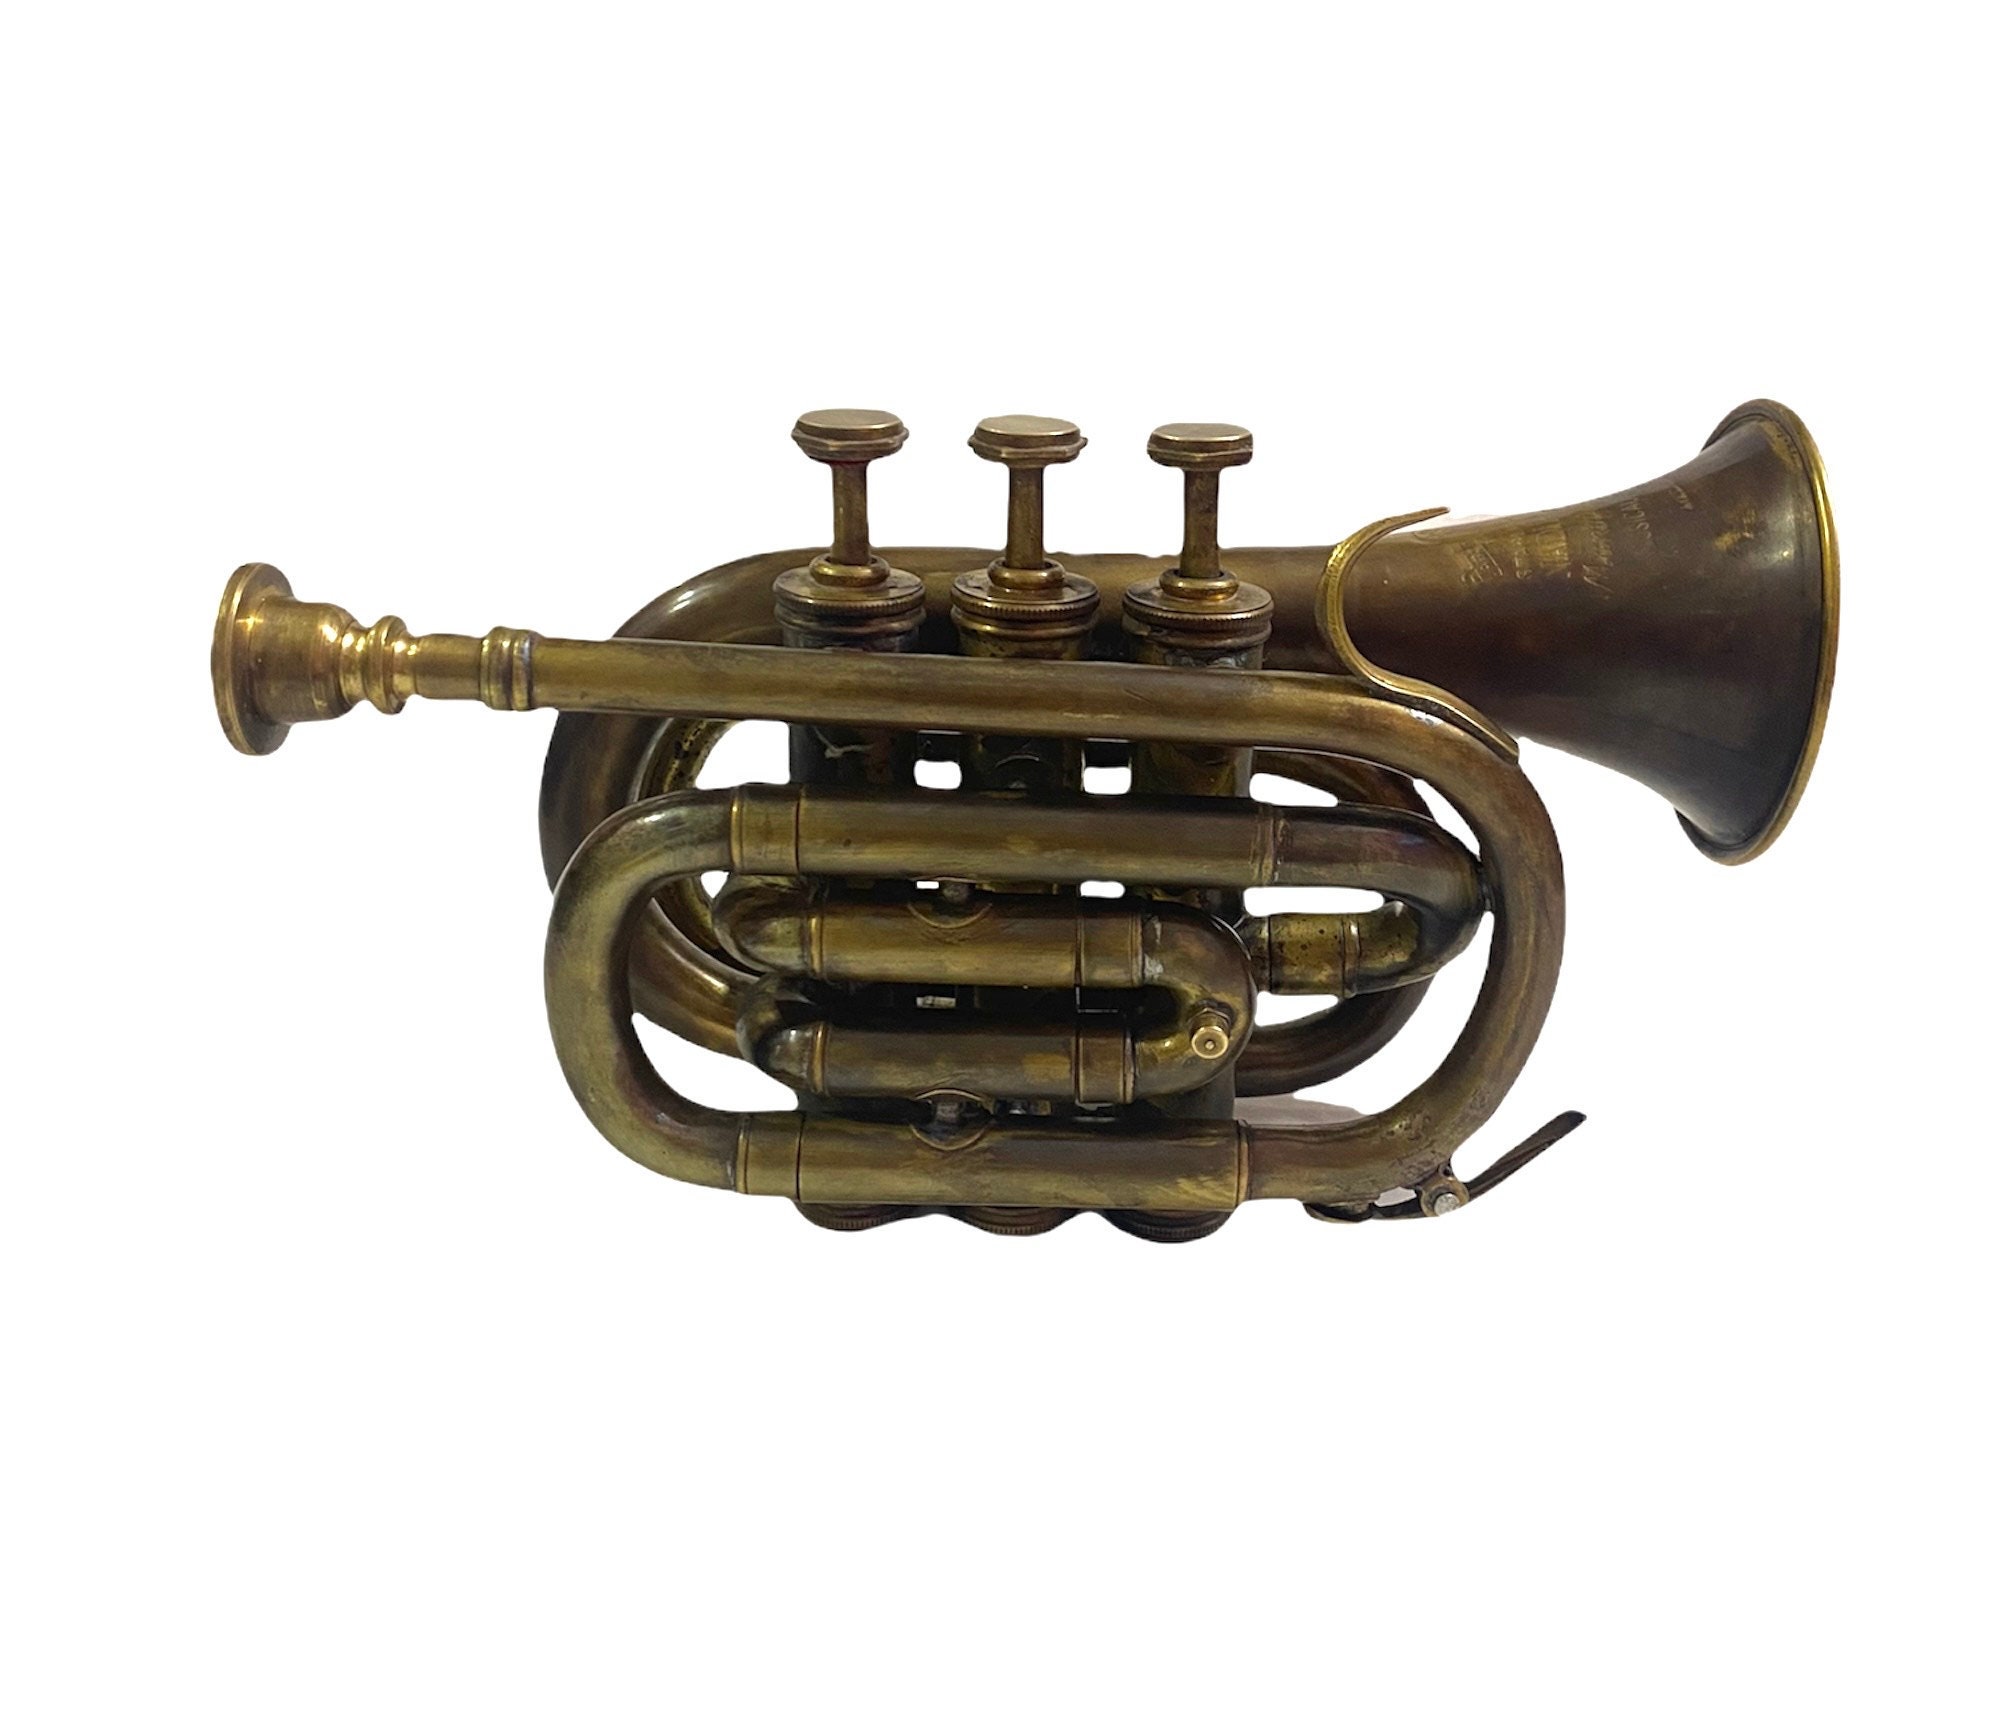 Mini trompette en Sib, trompette de poche, cor de clairon en laiton, 3  valves pour débutants ou étudiants avancés, idéal pour offrir -  France